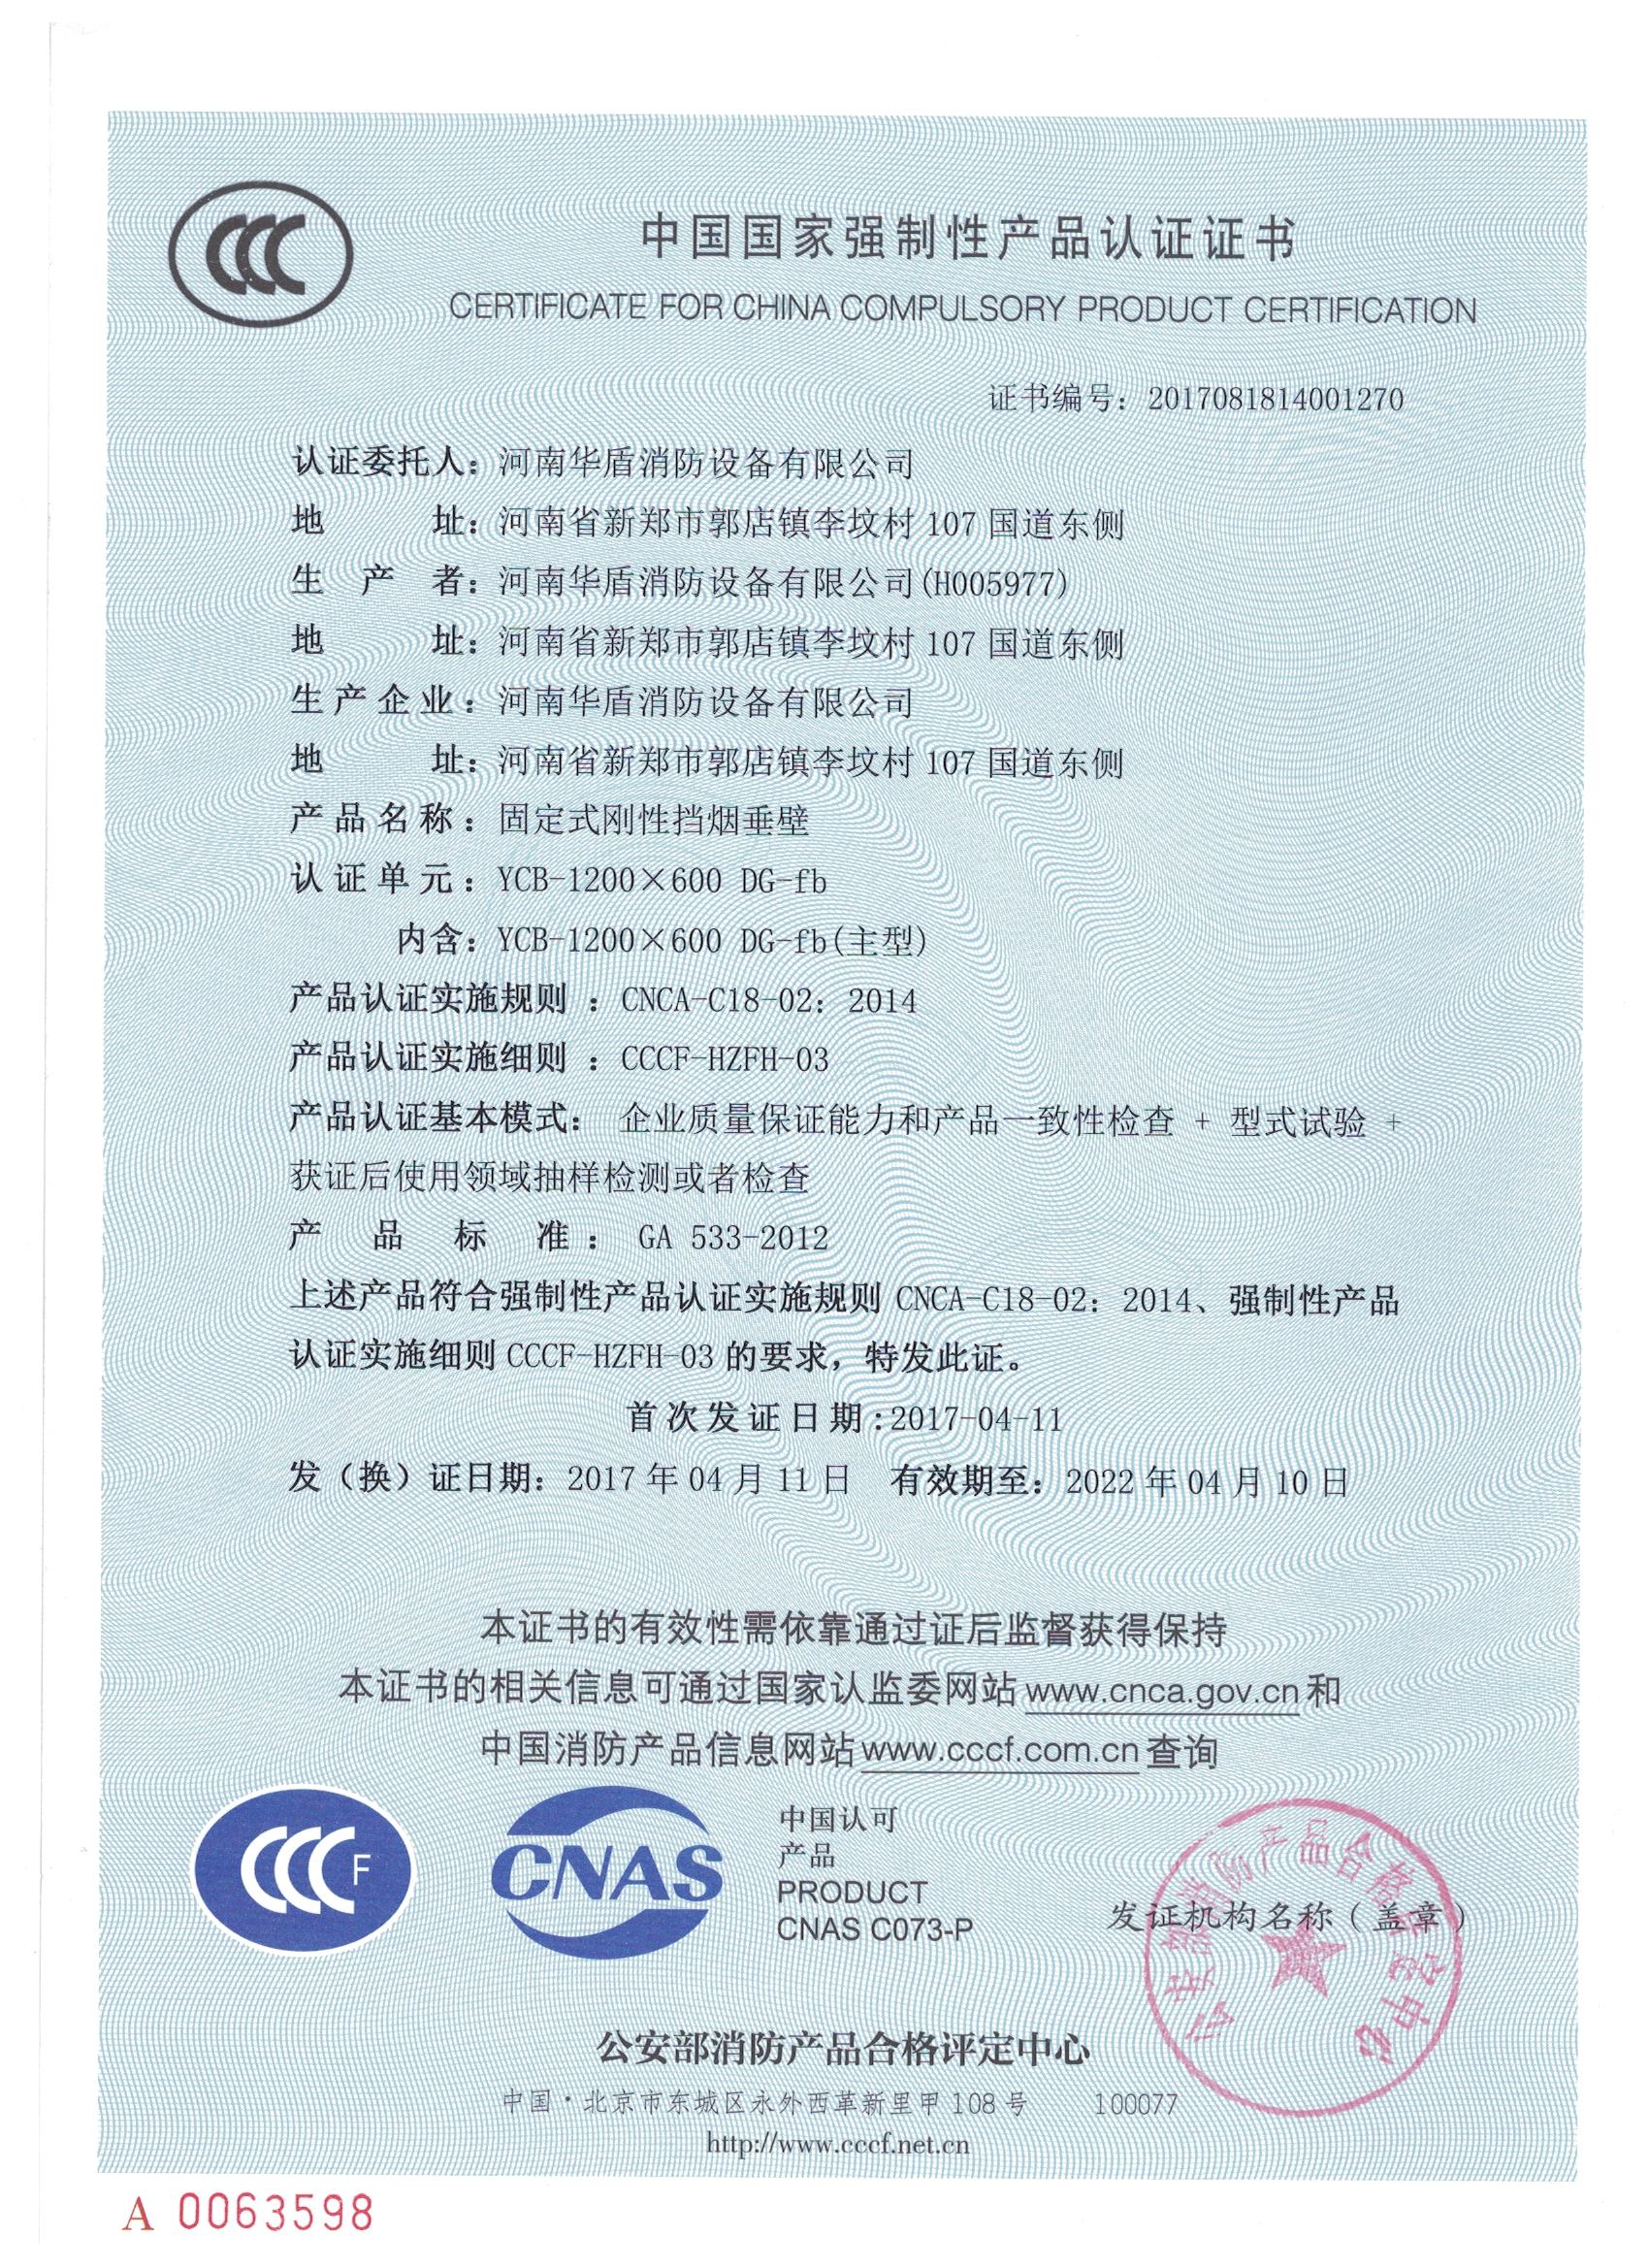 山西YCB-1200X600 DG-fb-3C证书